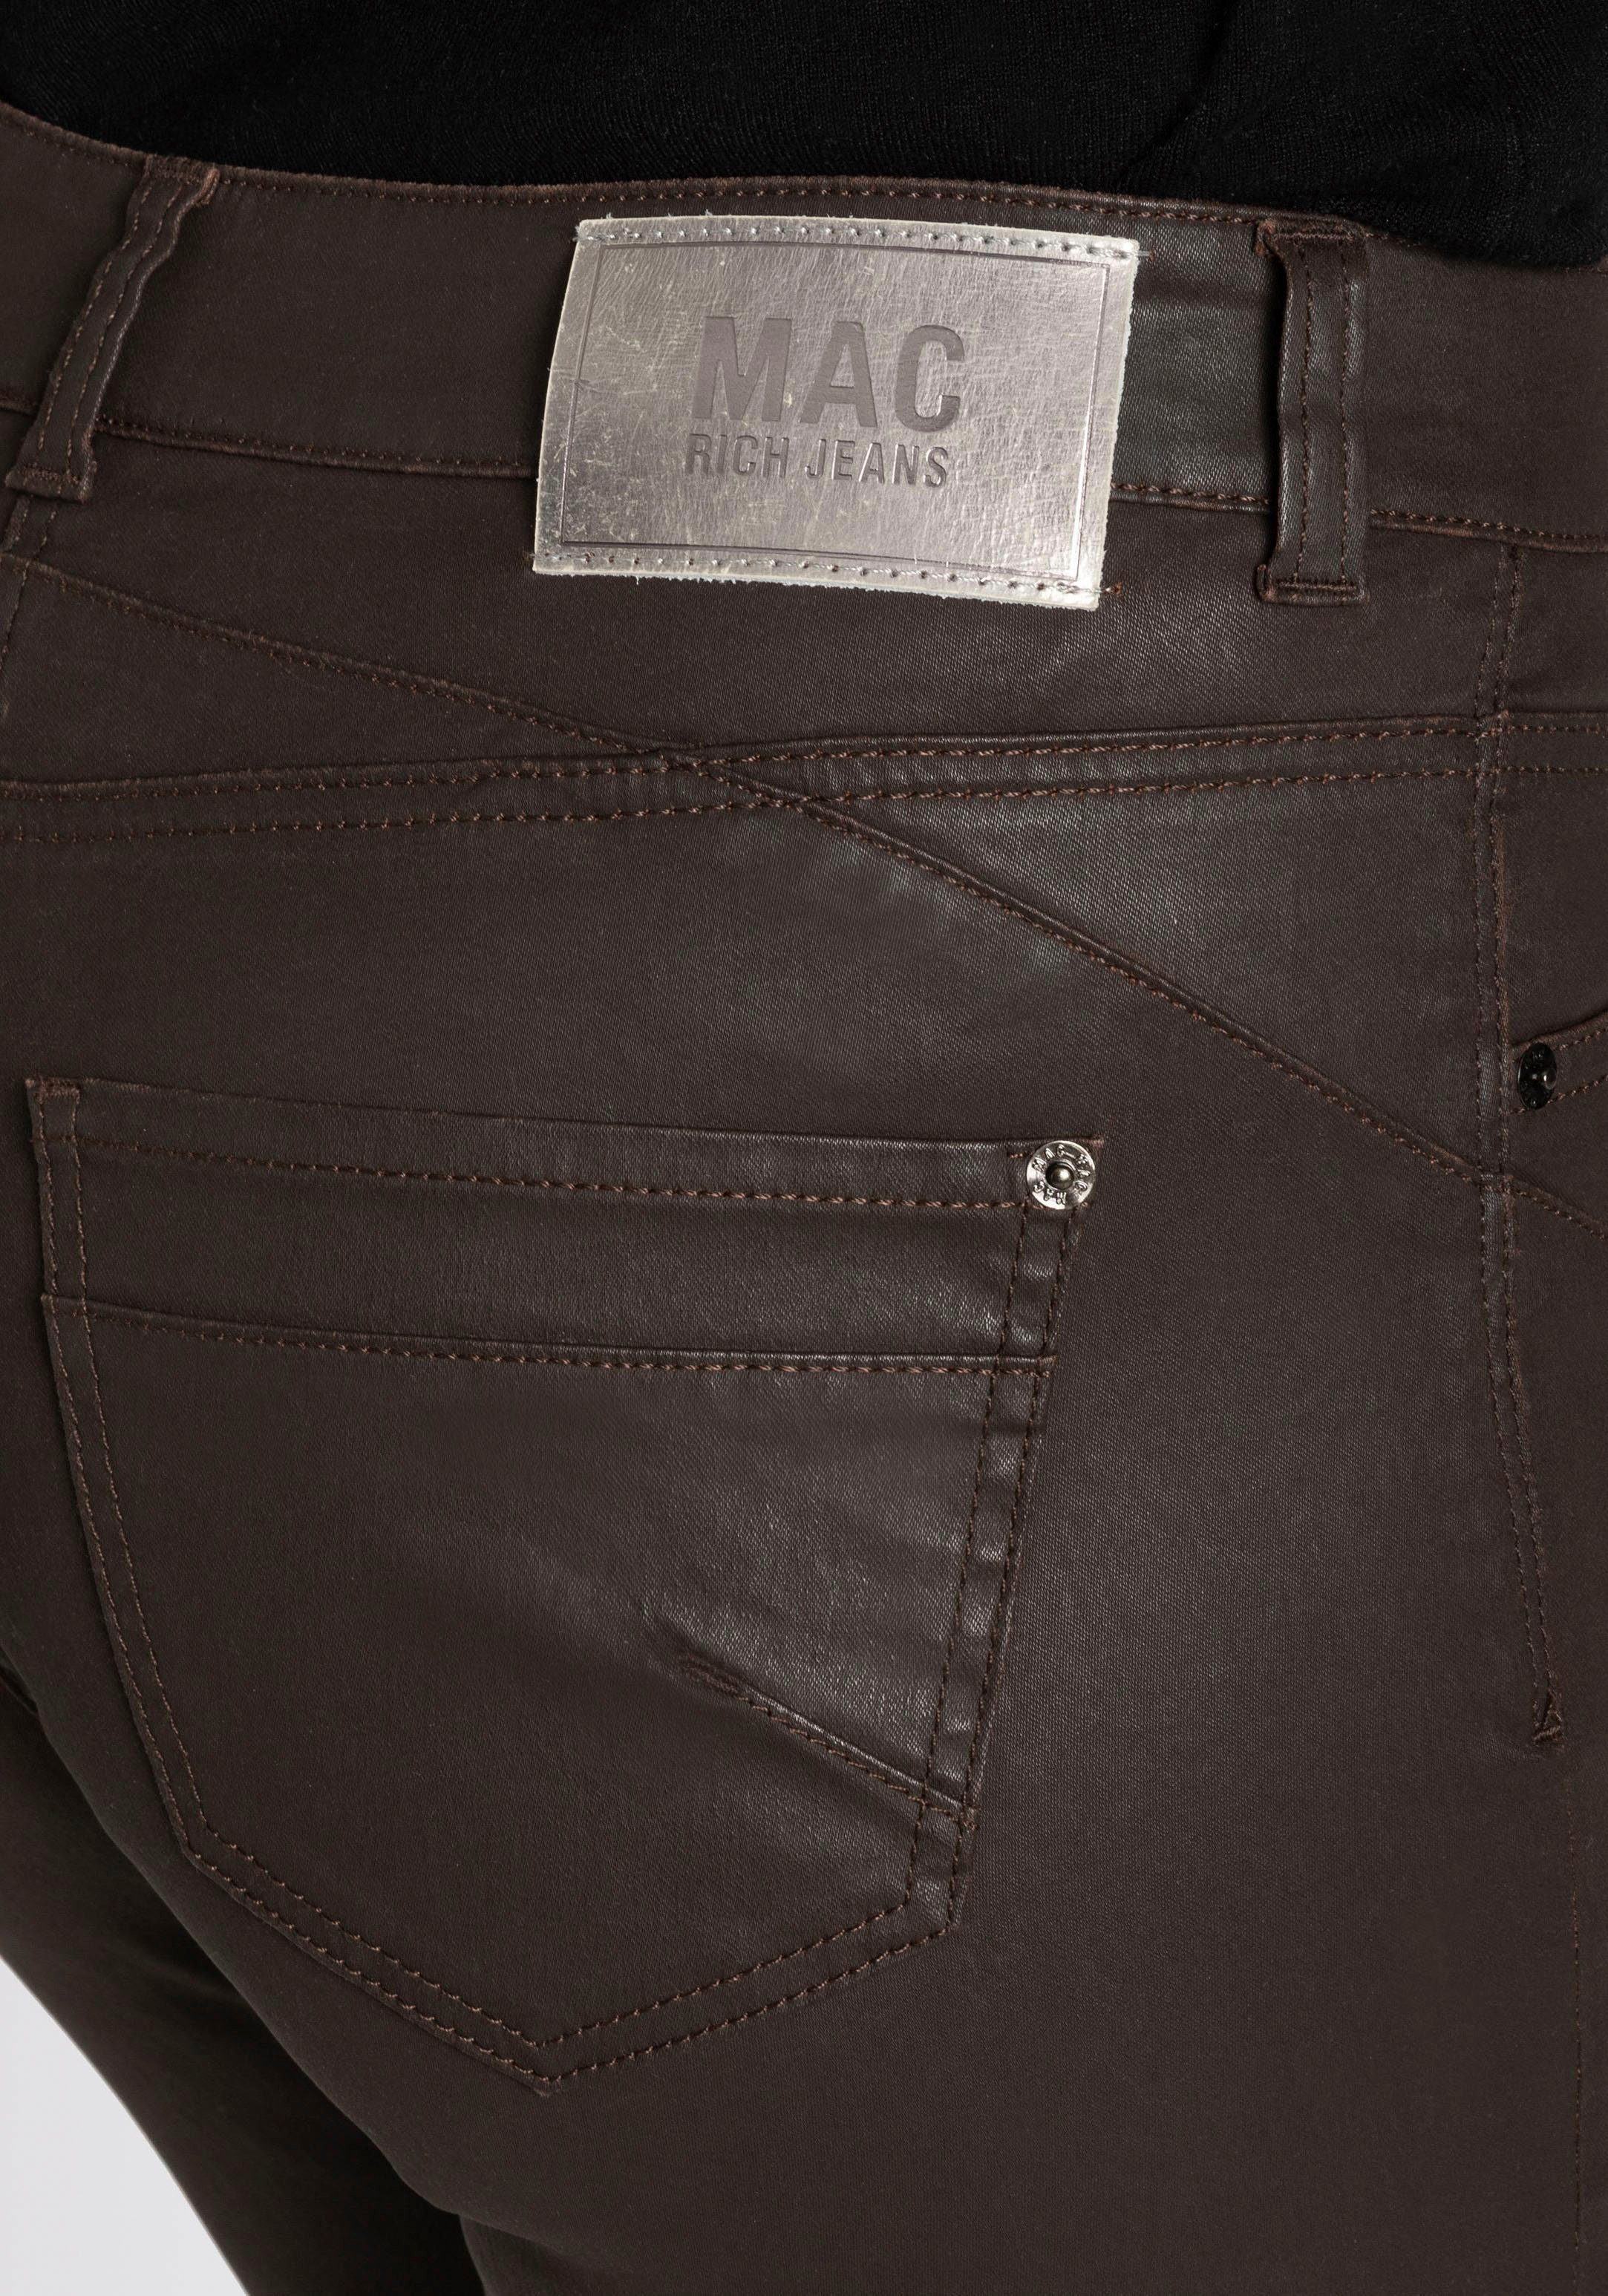 MAC RICH mit am SLIM Bein chic truffle coating brown Reißverschluss-Detail Röhrenhose